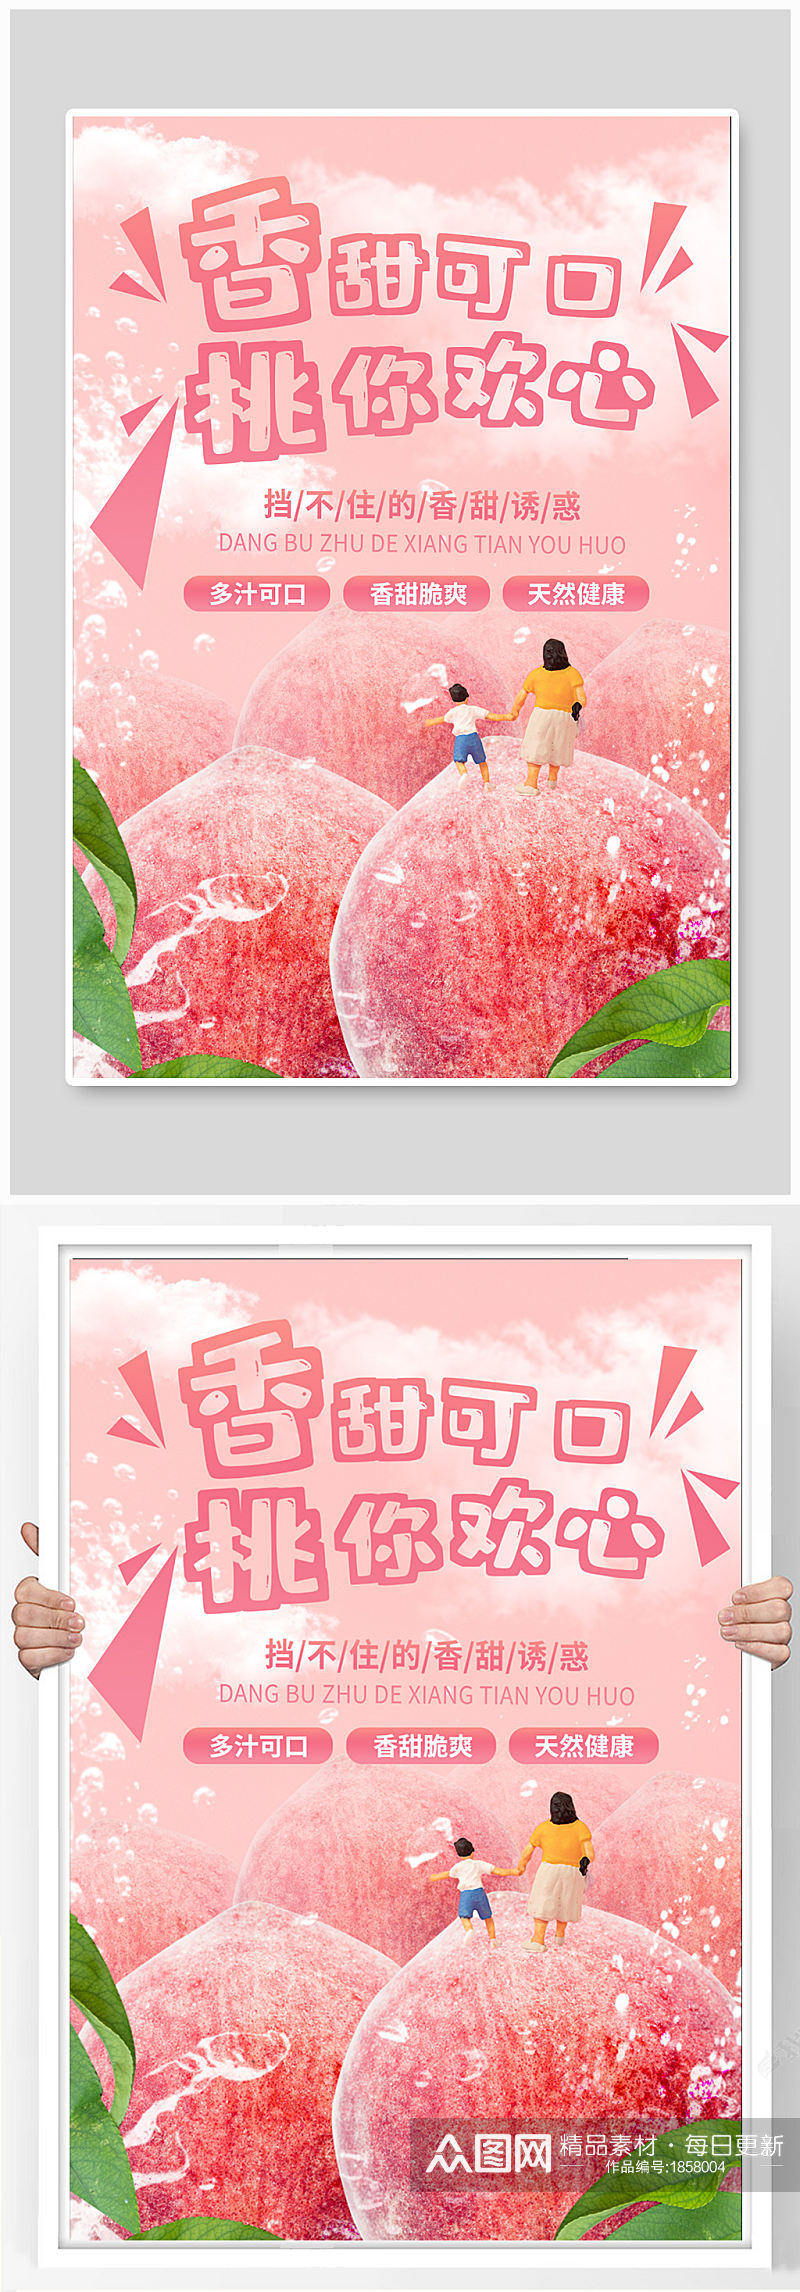 夏季粉红色桃子美食小清新微缩海报素材